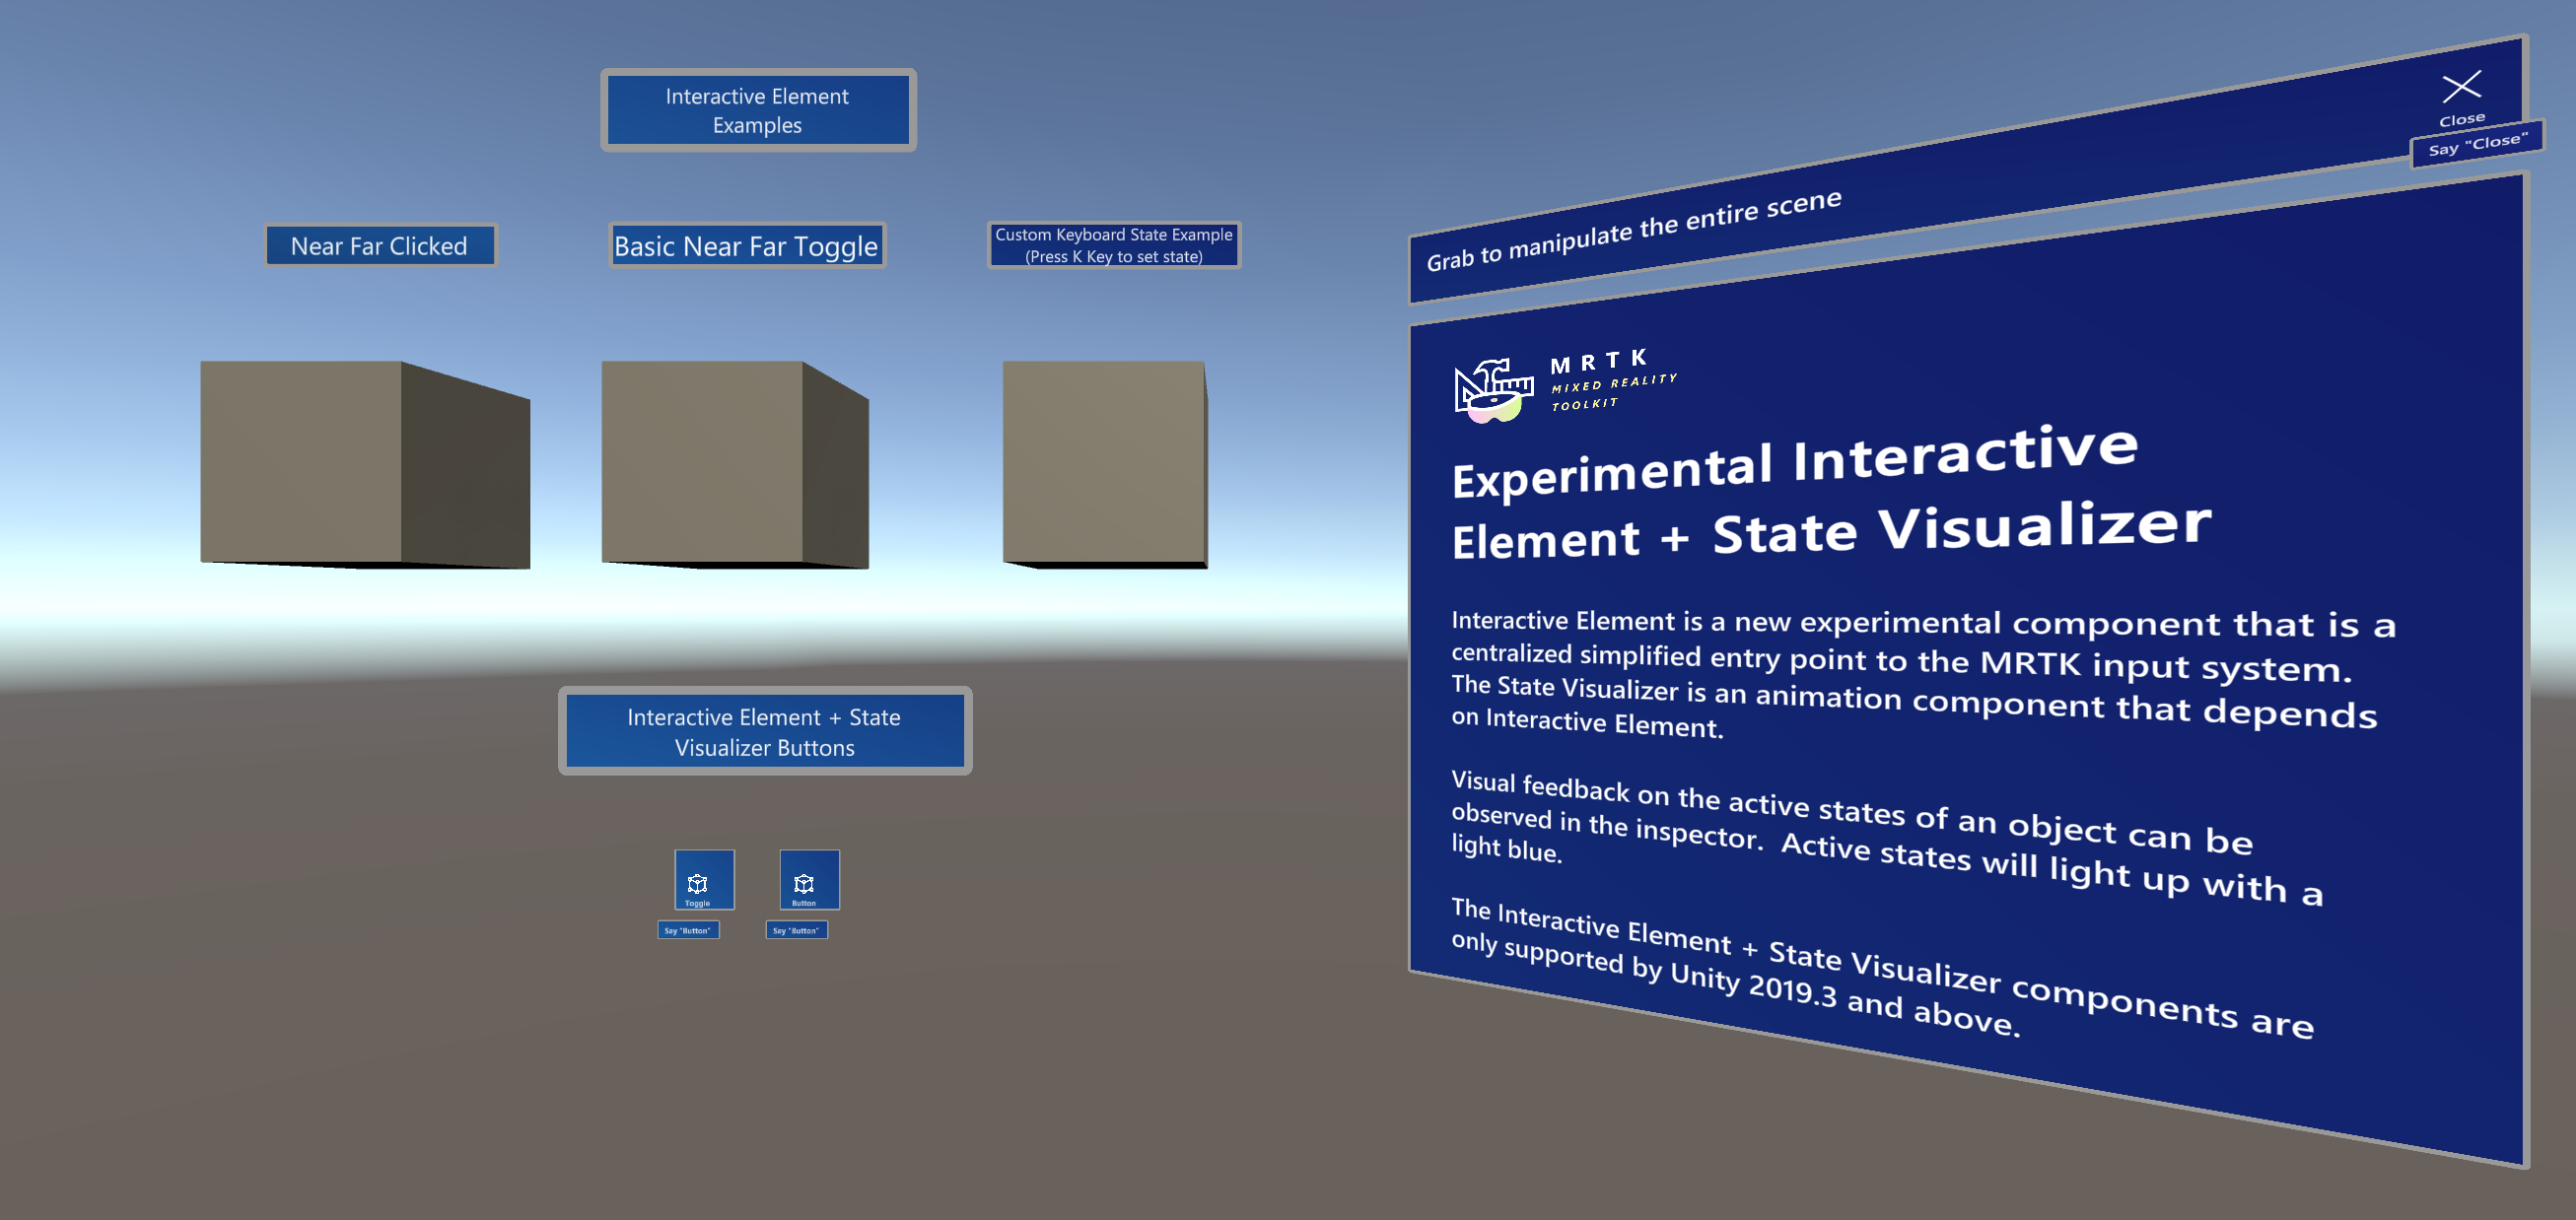 Voorbeeldscène met interactive element en state visualizer